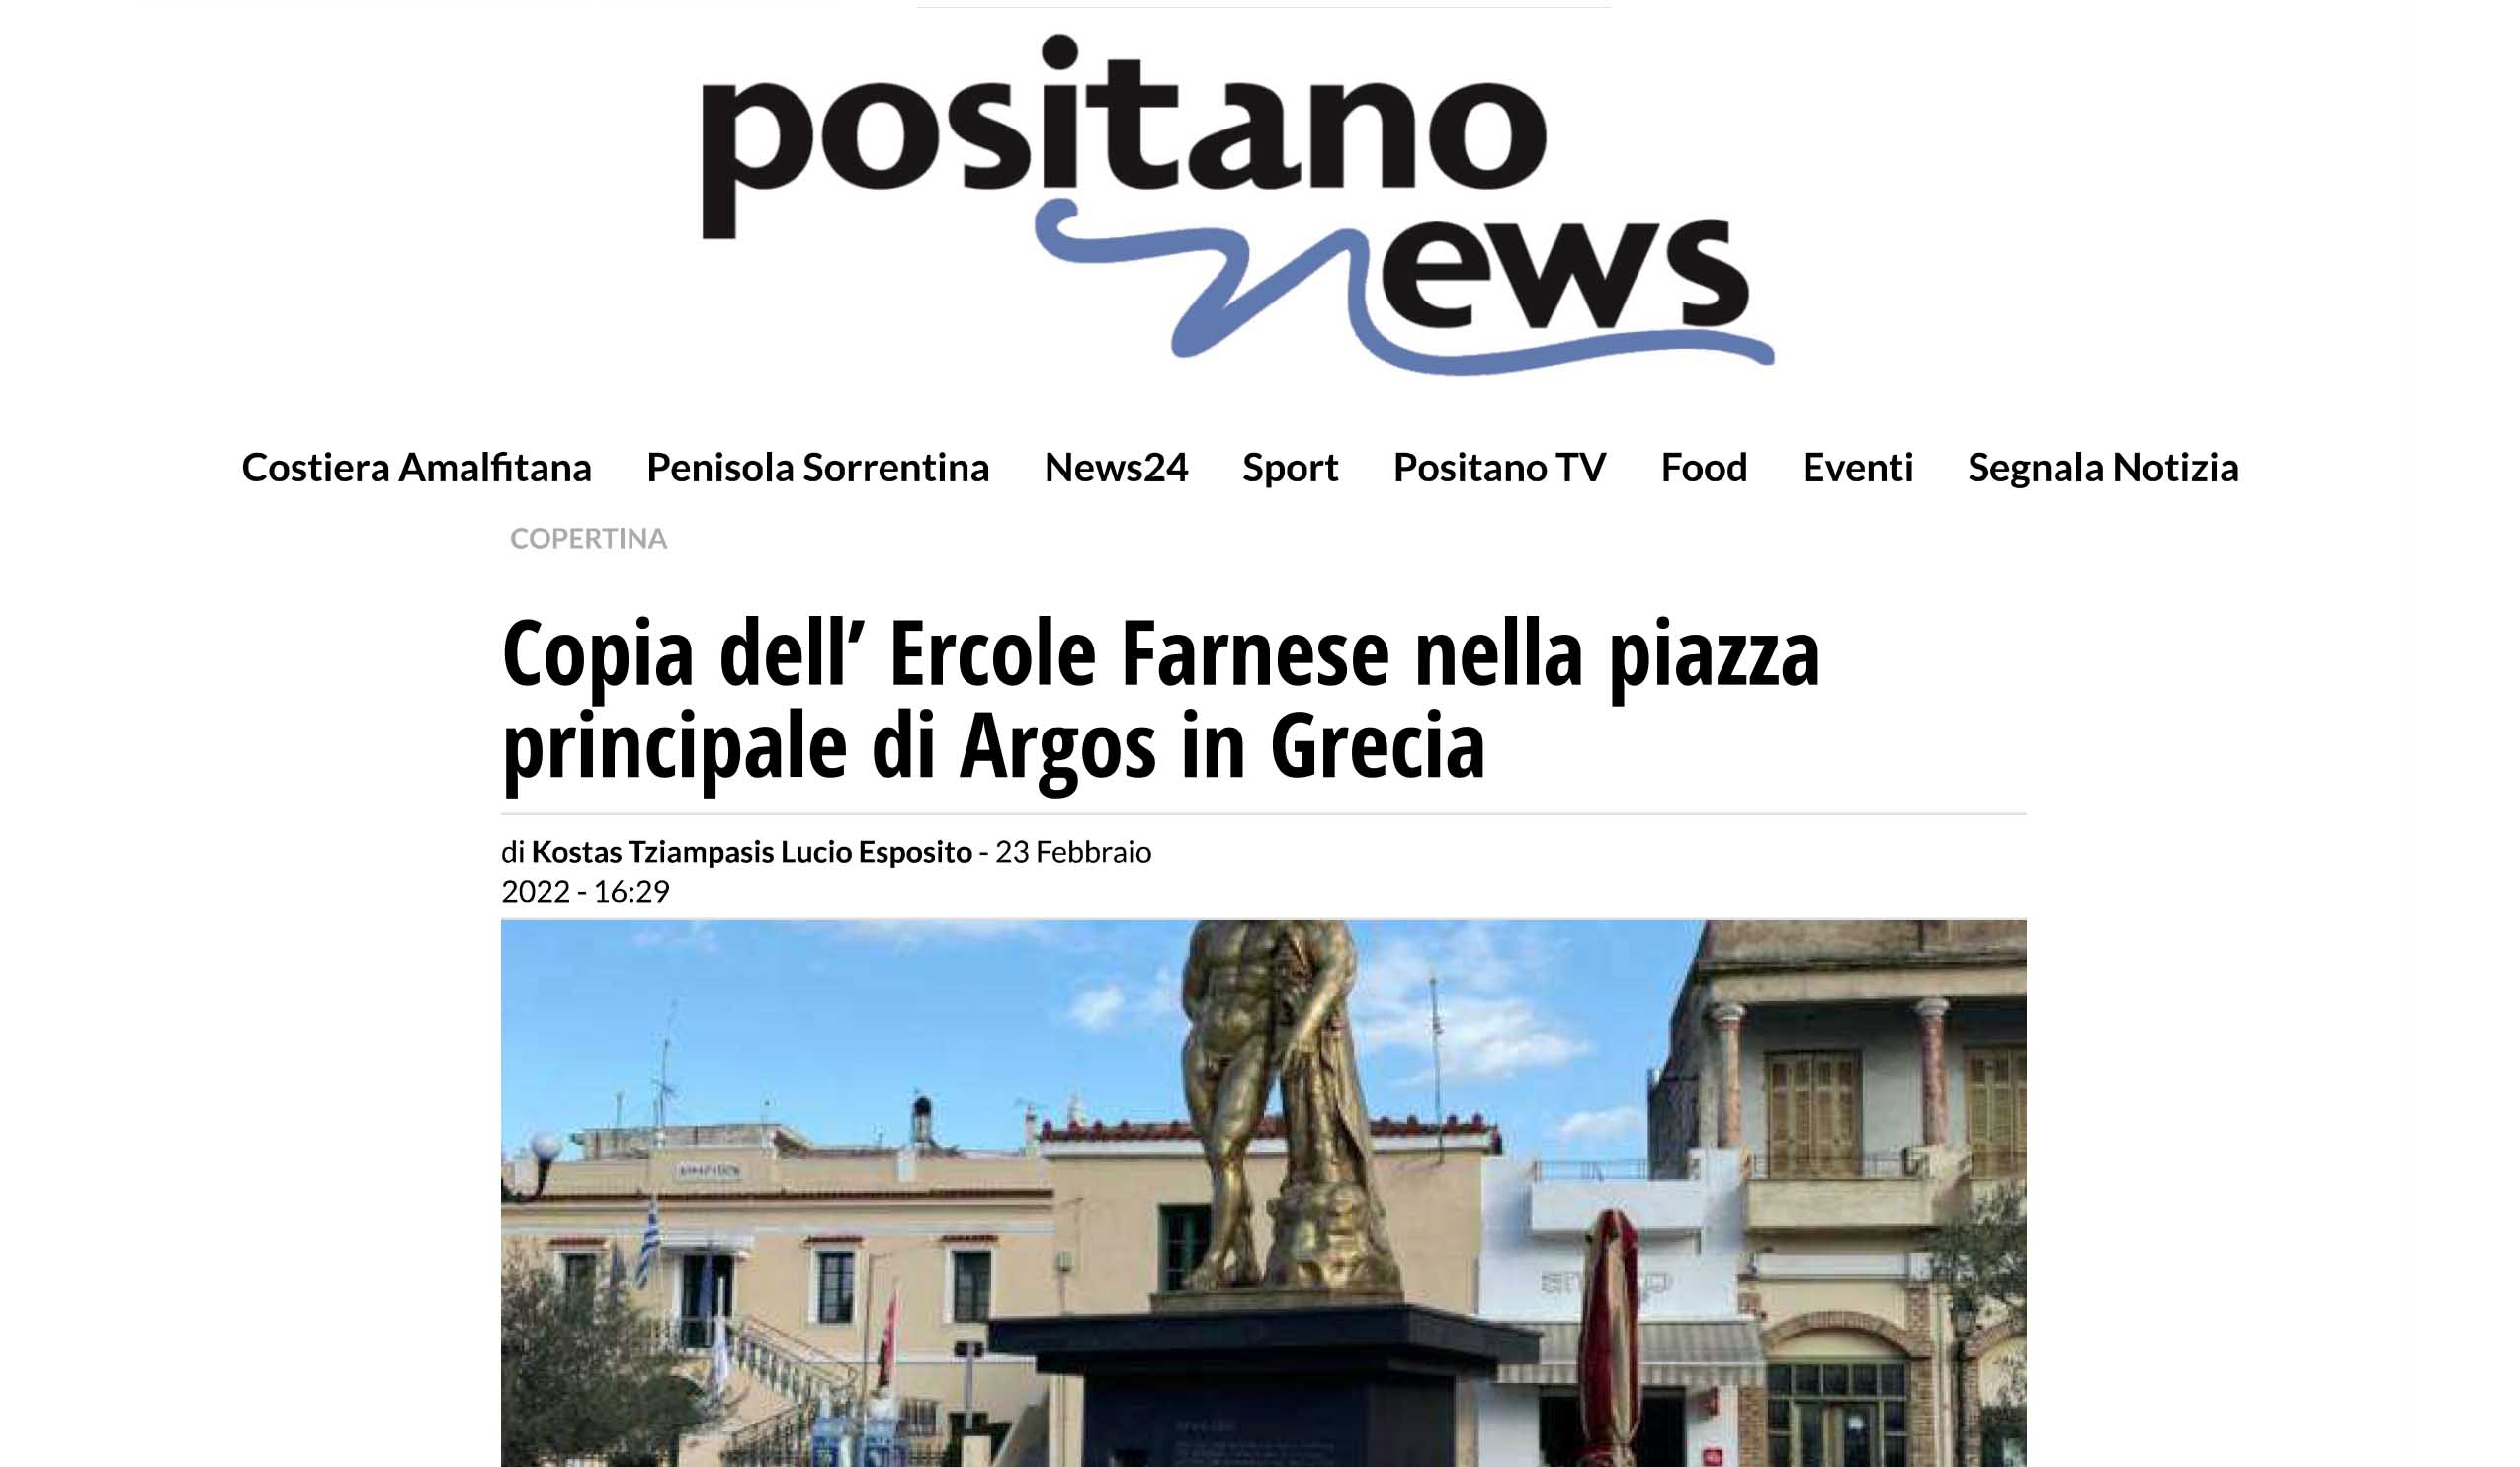 Οι Ιταλοί ενθουσιάστηκαν με το άγαλμα του Ηρακλή στο Άργος